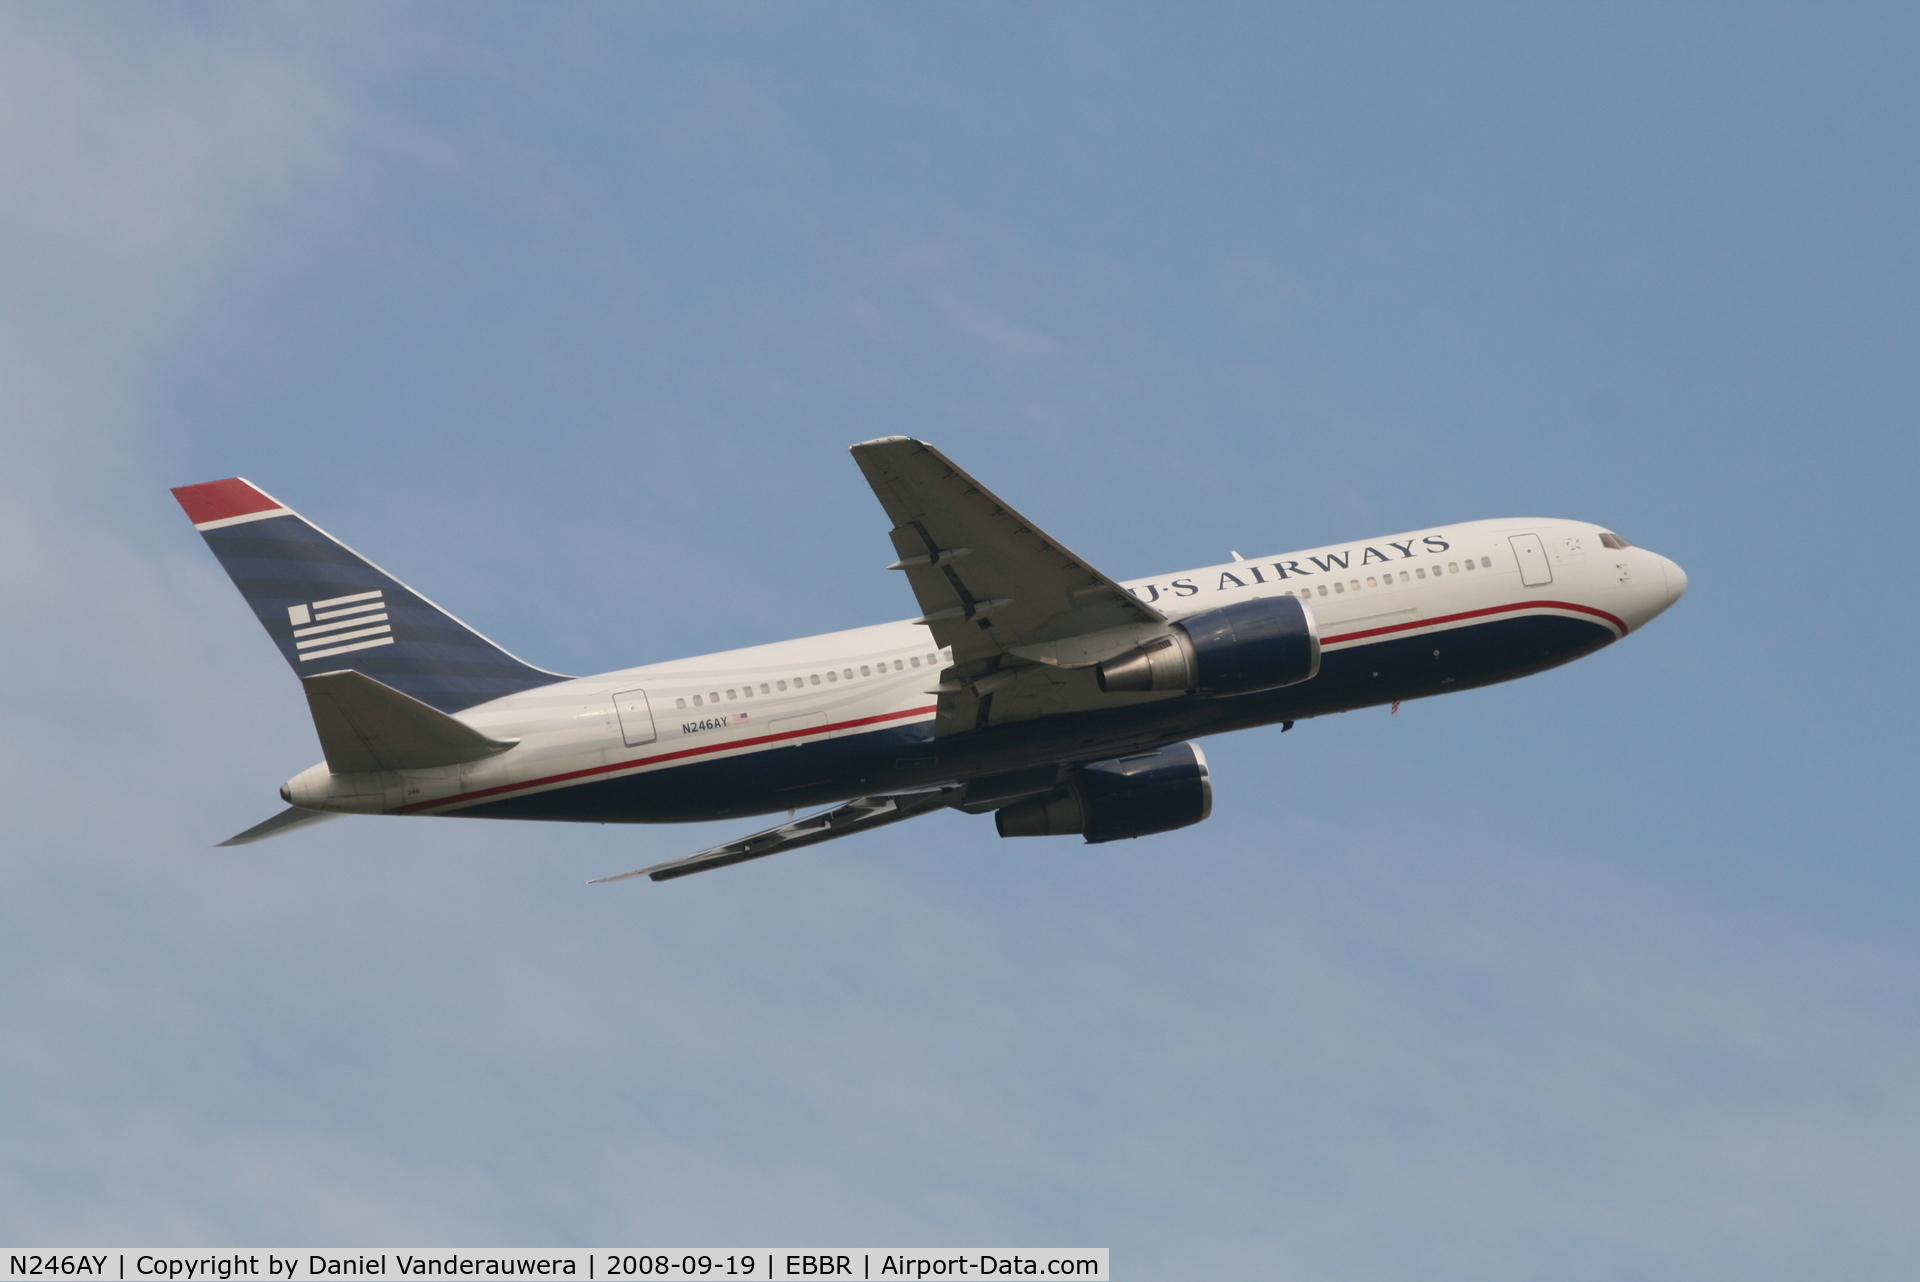 N246AY, 1987 Boeing 767-201ER C/N 23898, Flight US751 is taking off from RWY 07R